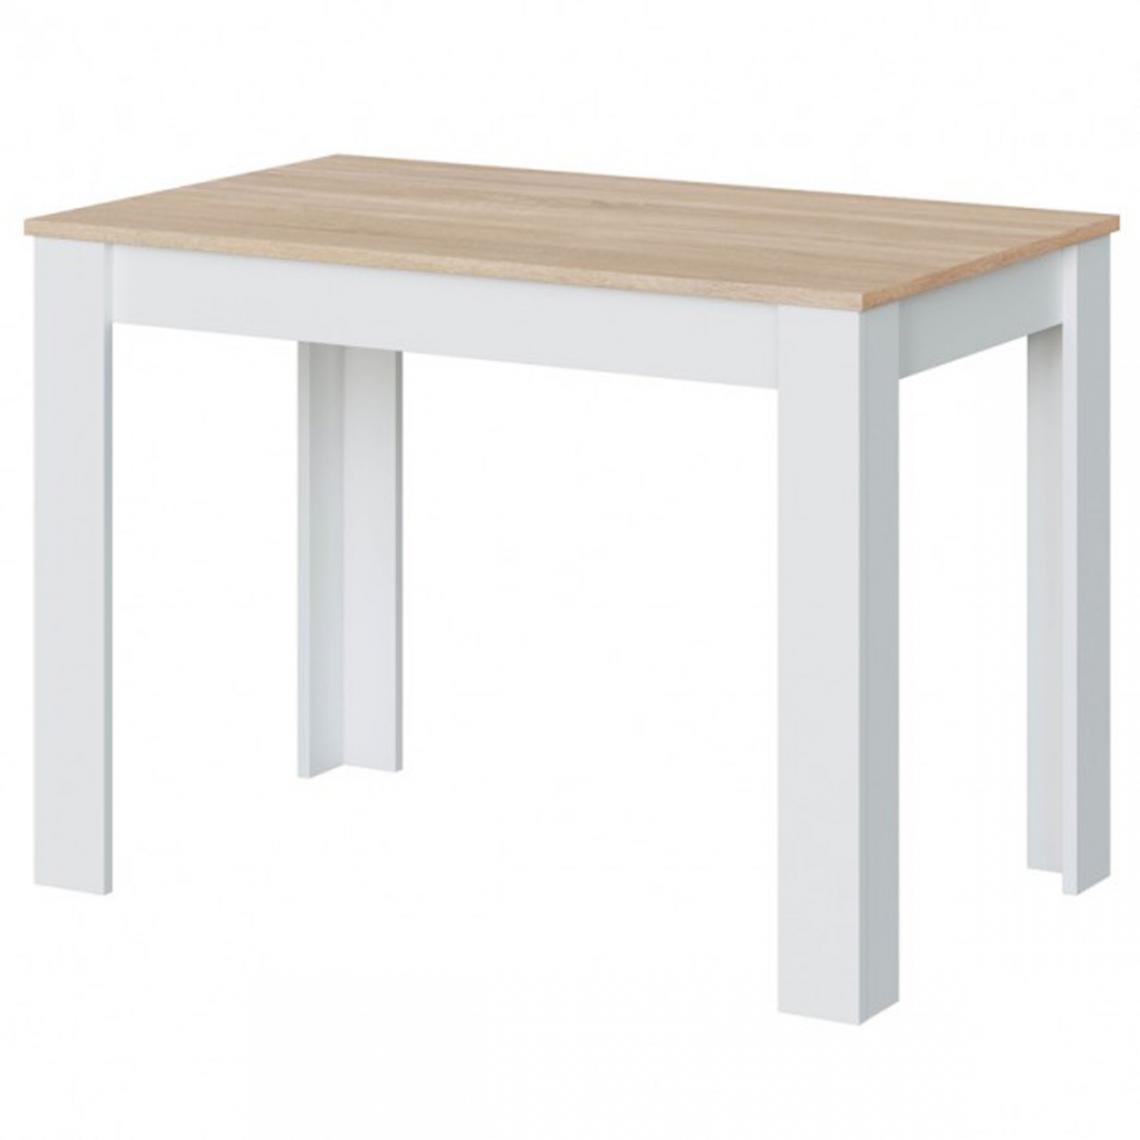 Pegane - Table auxiliaire fixe coloris chêne canadien / blanc artic -  Hauteur 78 x Longueur 109 x Profondeur 67 cm - Tables à manger